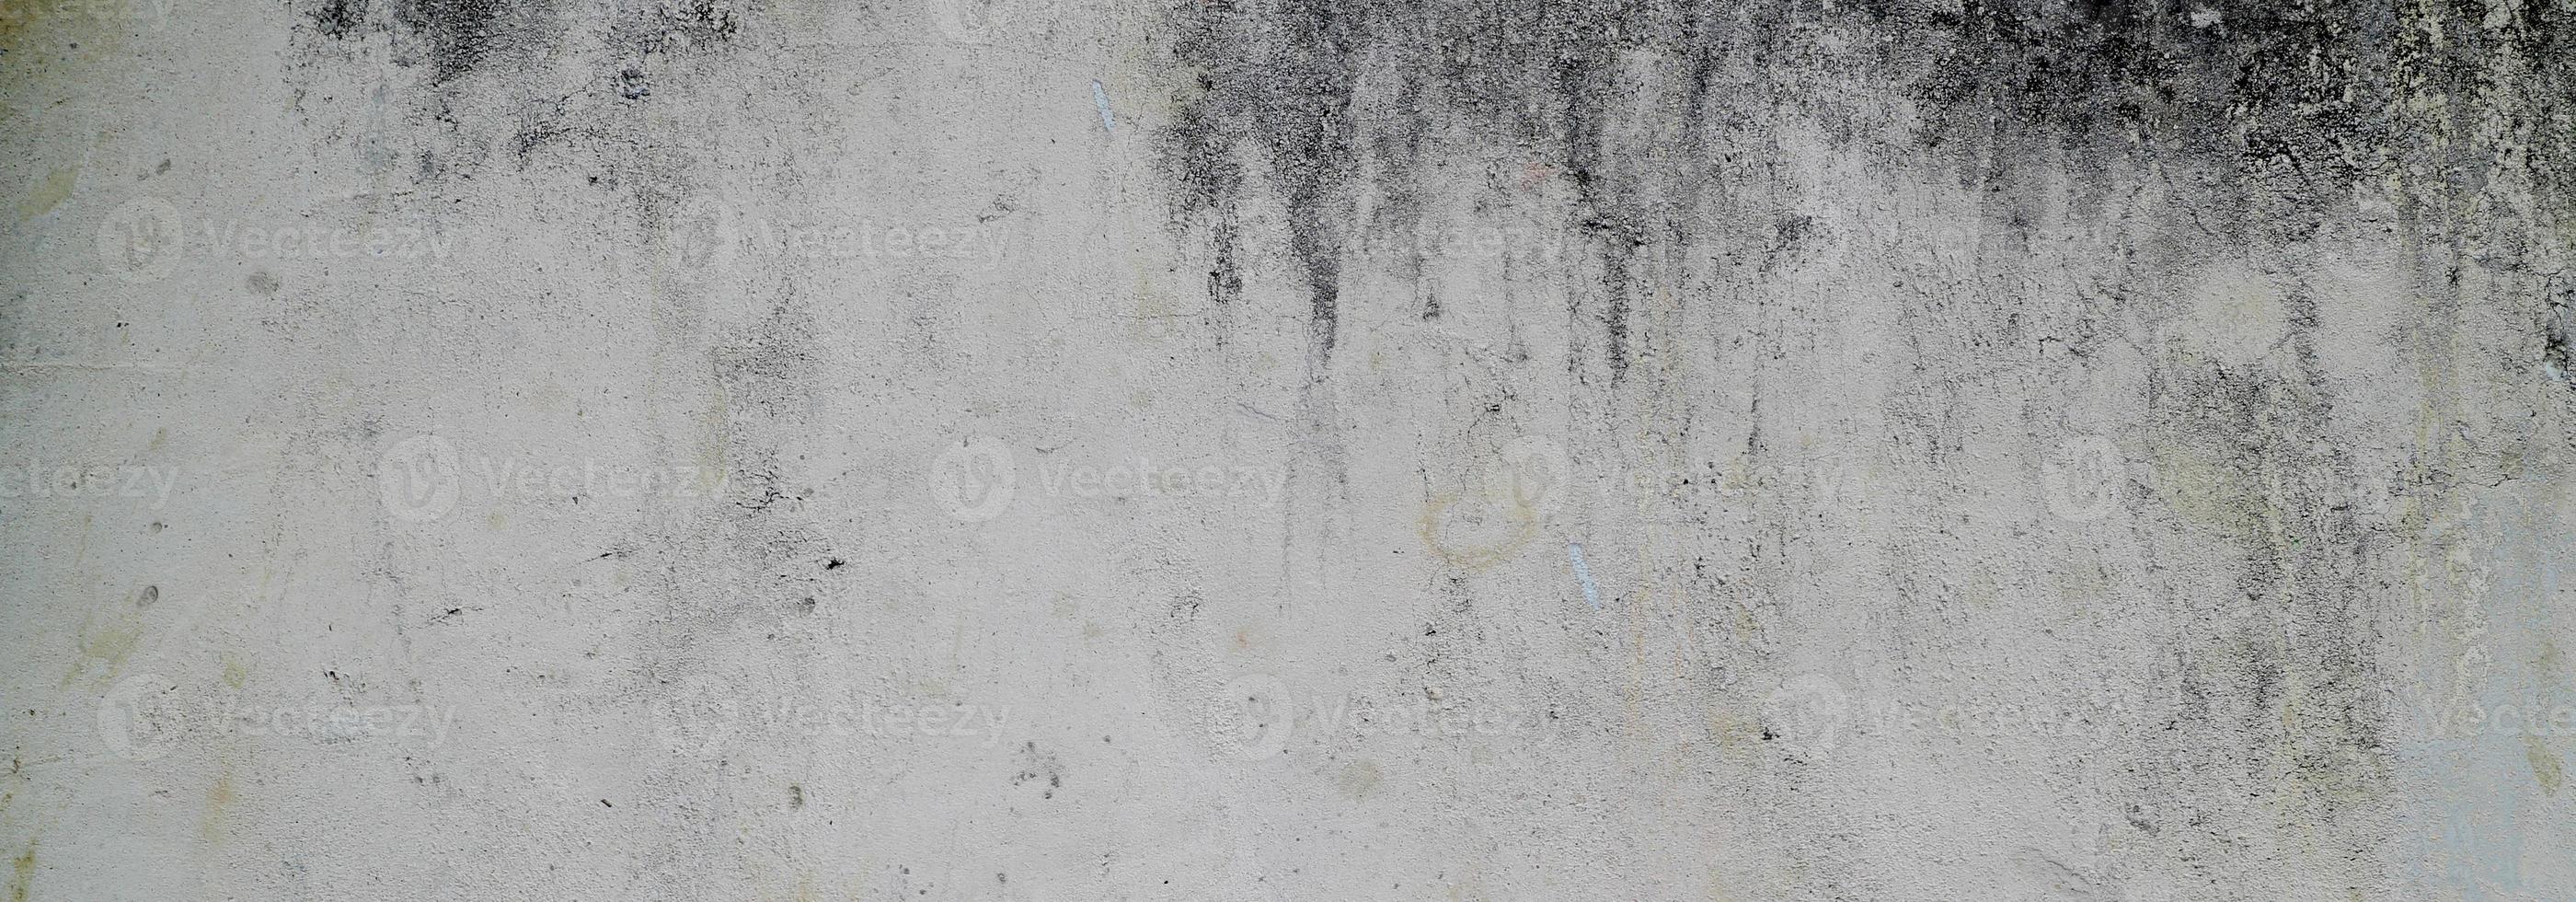 parete strutturata con grigio. struttura del cemento cemento leggermente grigio chiaro per lo sfondo. trama astratta della vernice. foto